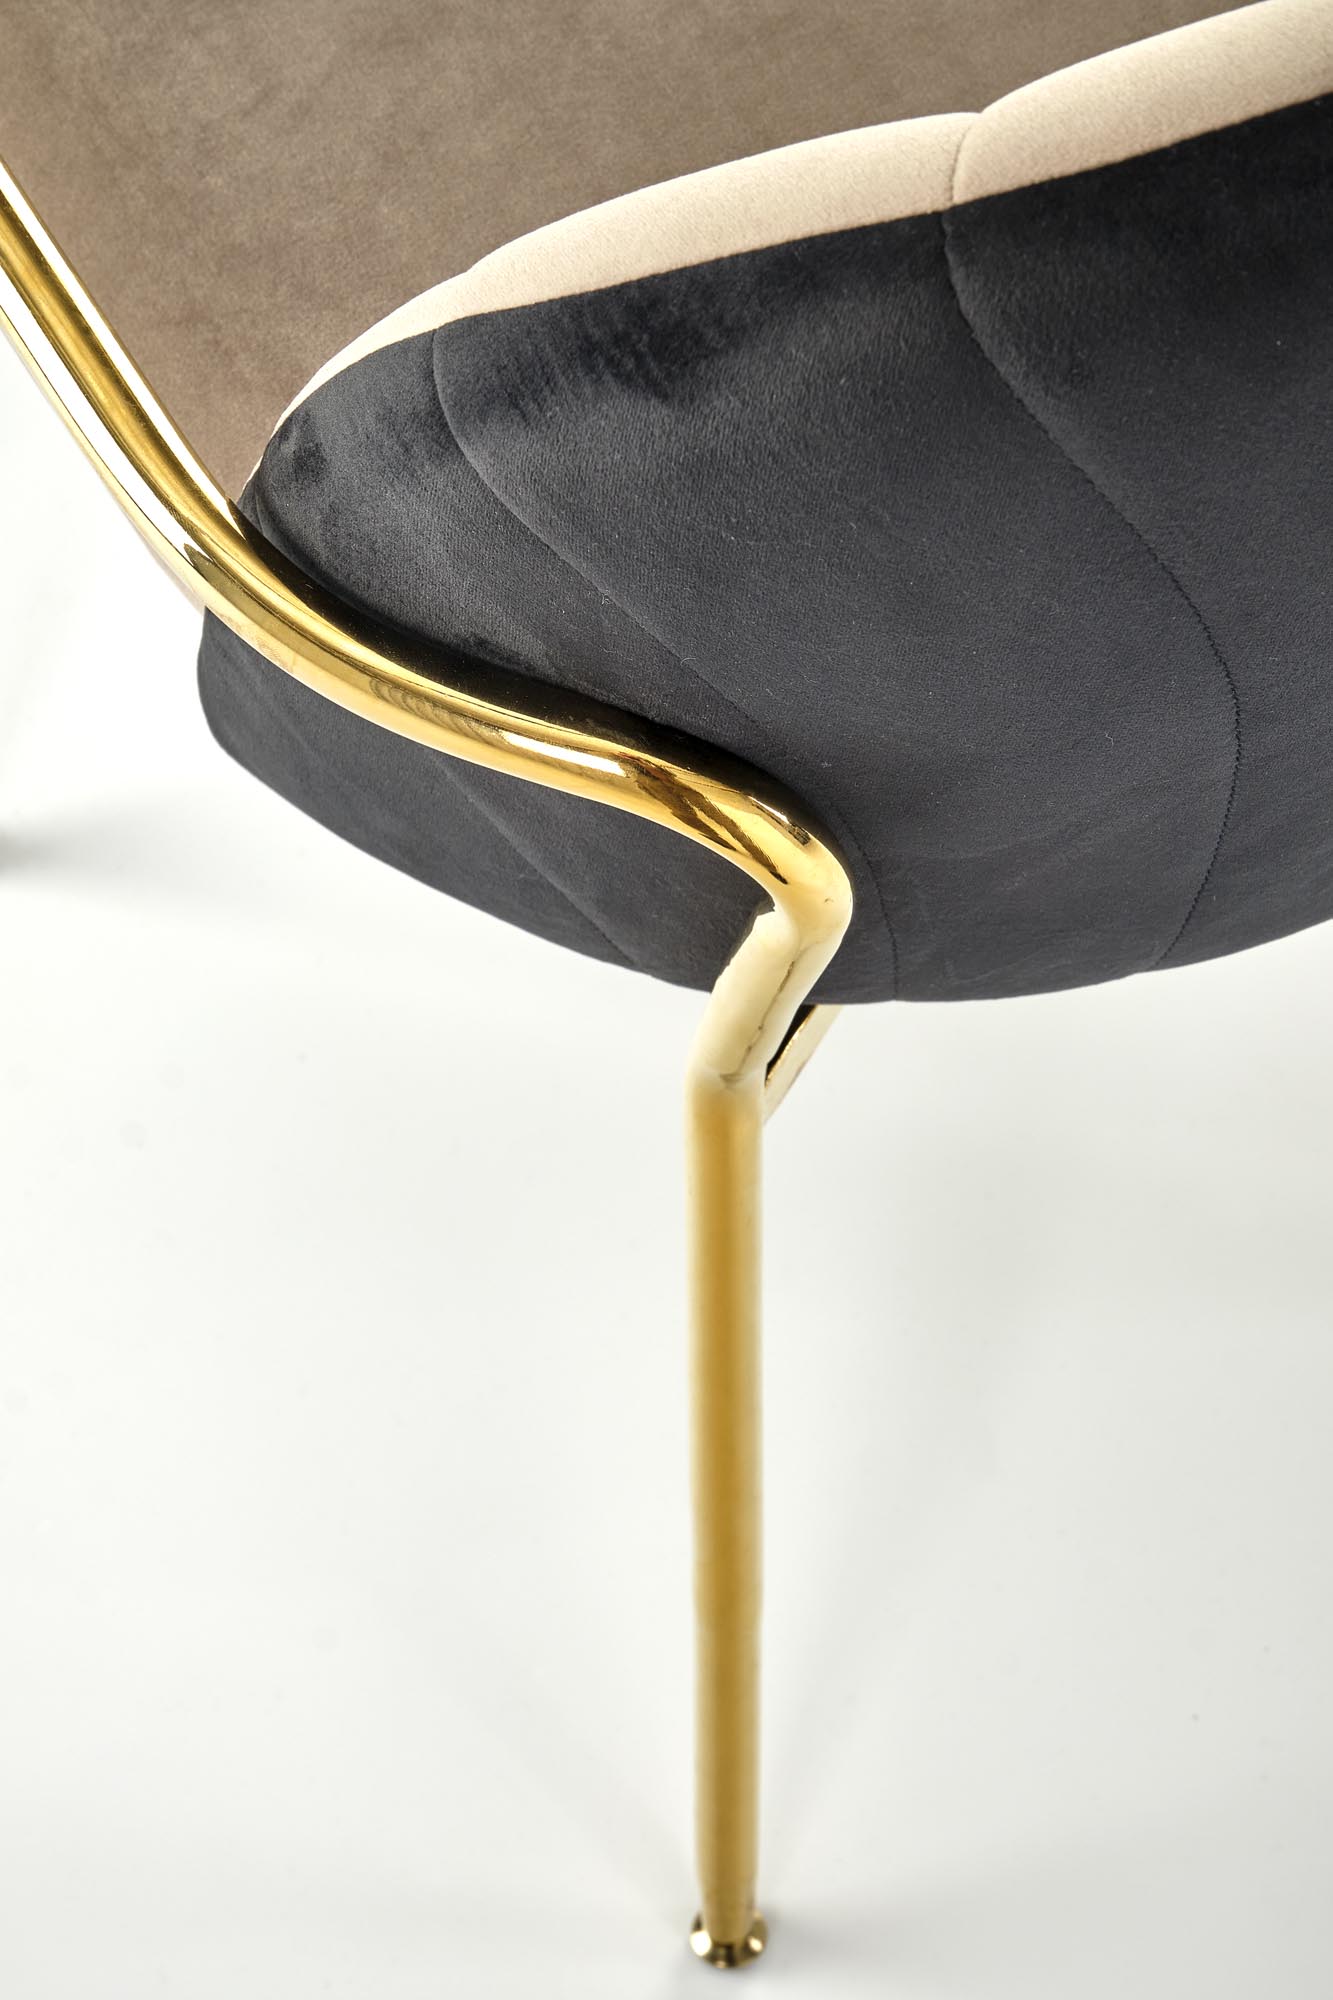 K500 Židle béžový / Fekete Židle čalouněné z podlokietnikami k500 - béžový / Fekete